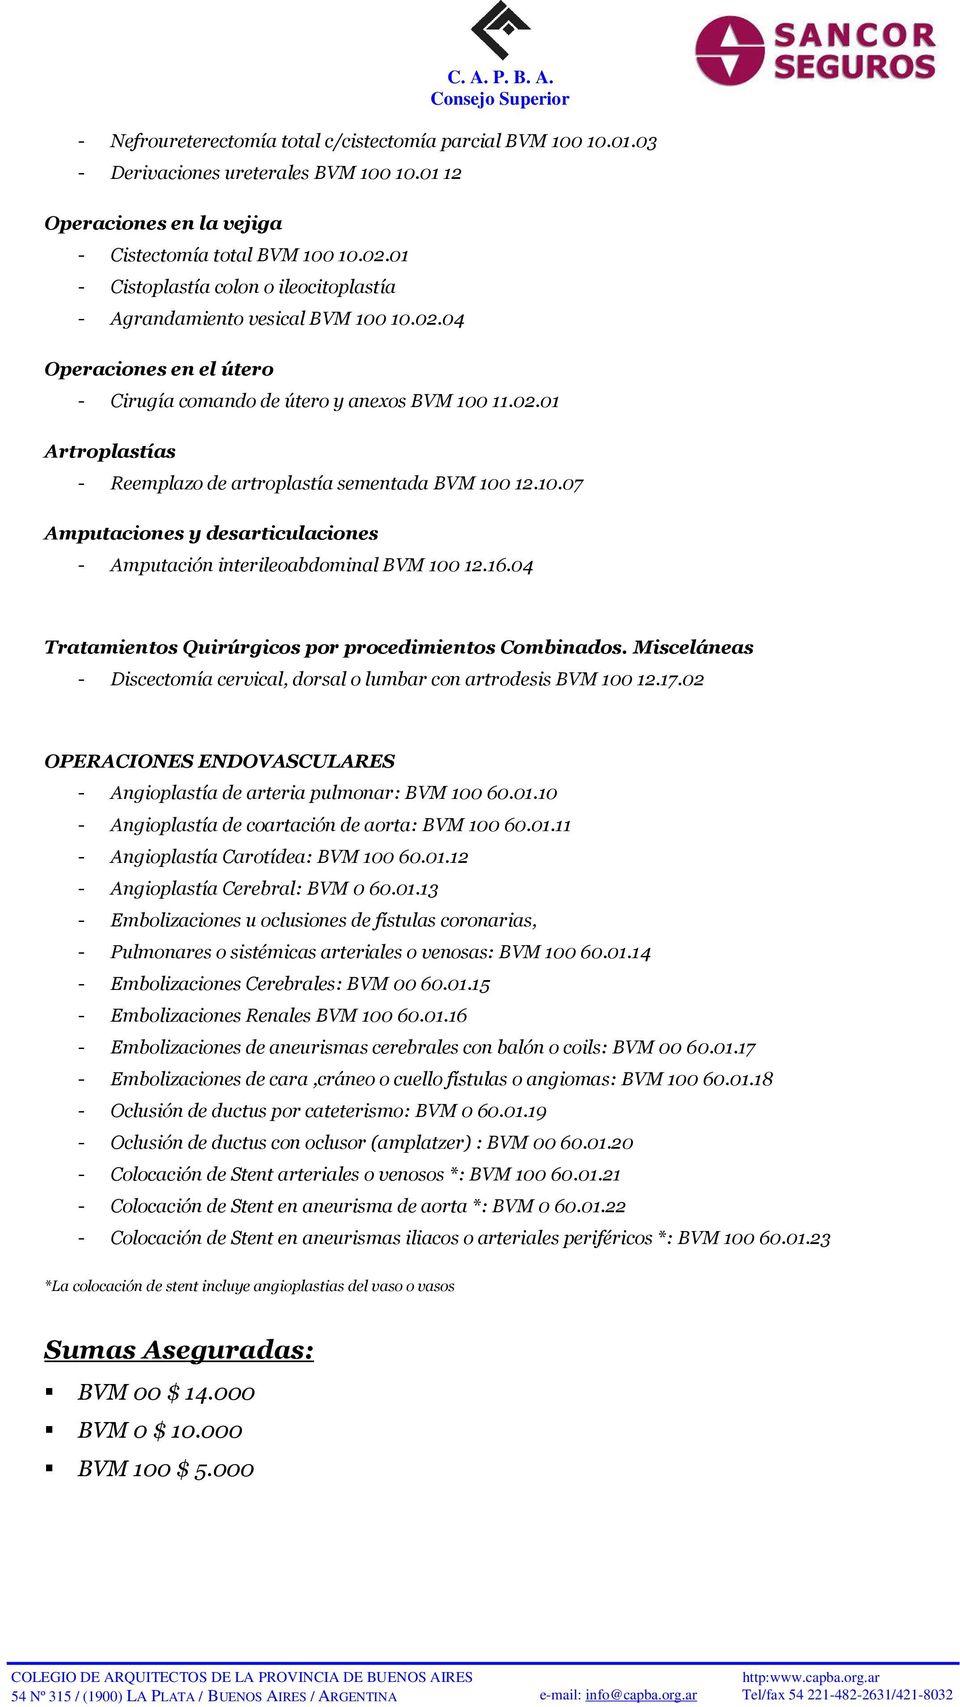 10.07 Amputaciones y desarticulaciones - Amputación interileoabdominal BVM 100 12.16.04 Tratamientos Quirúrgicos por procedimientos Combinados.